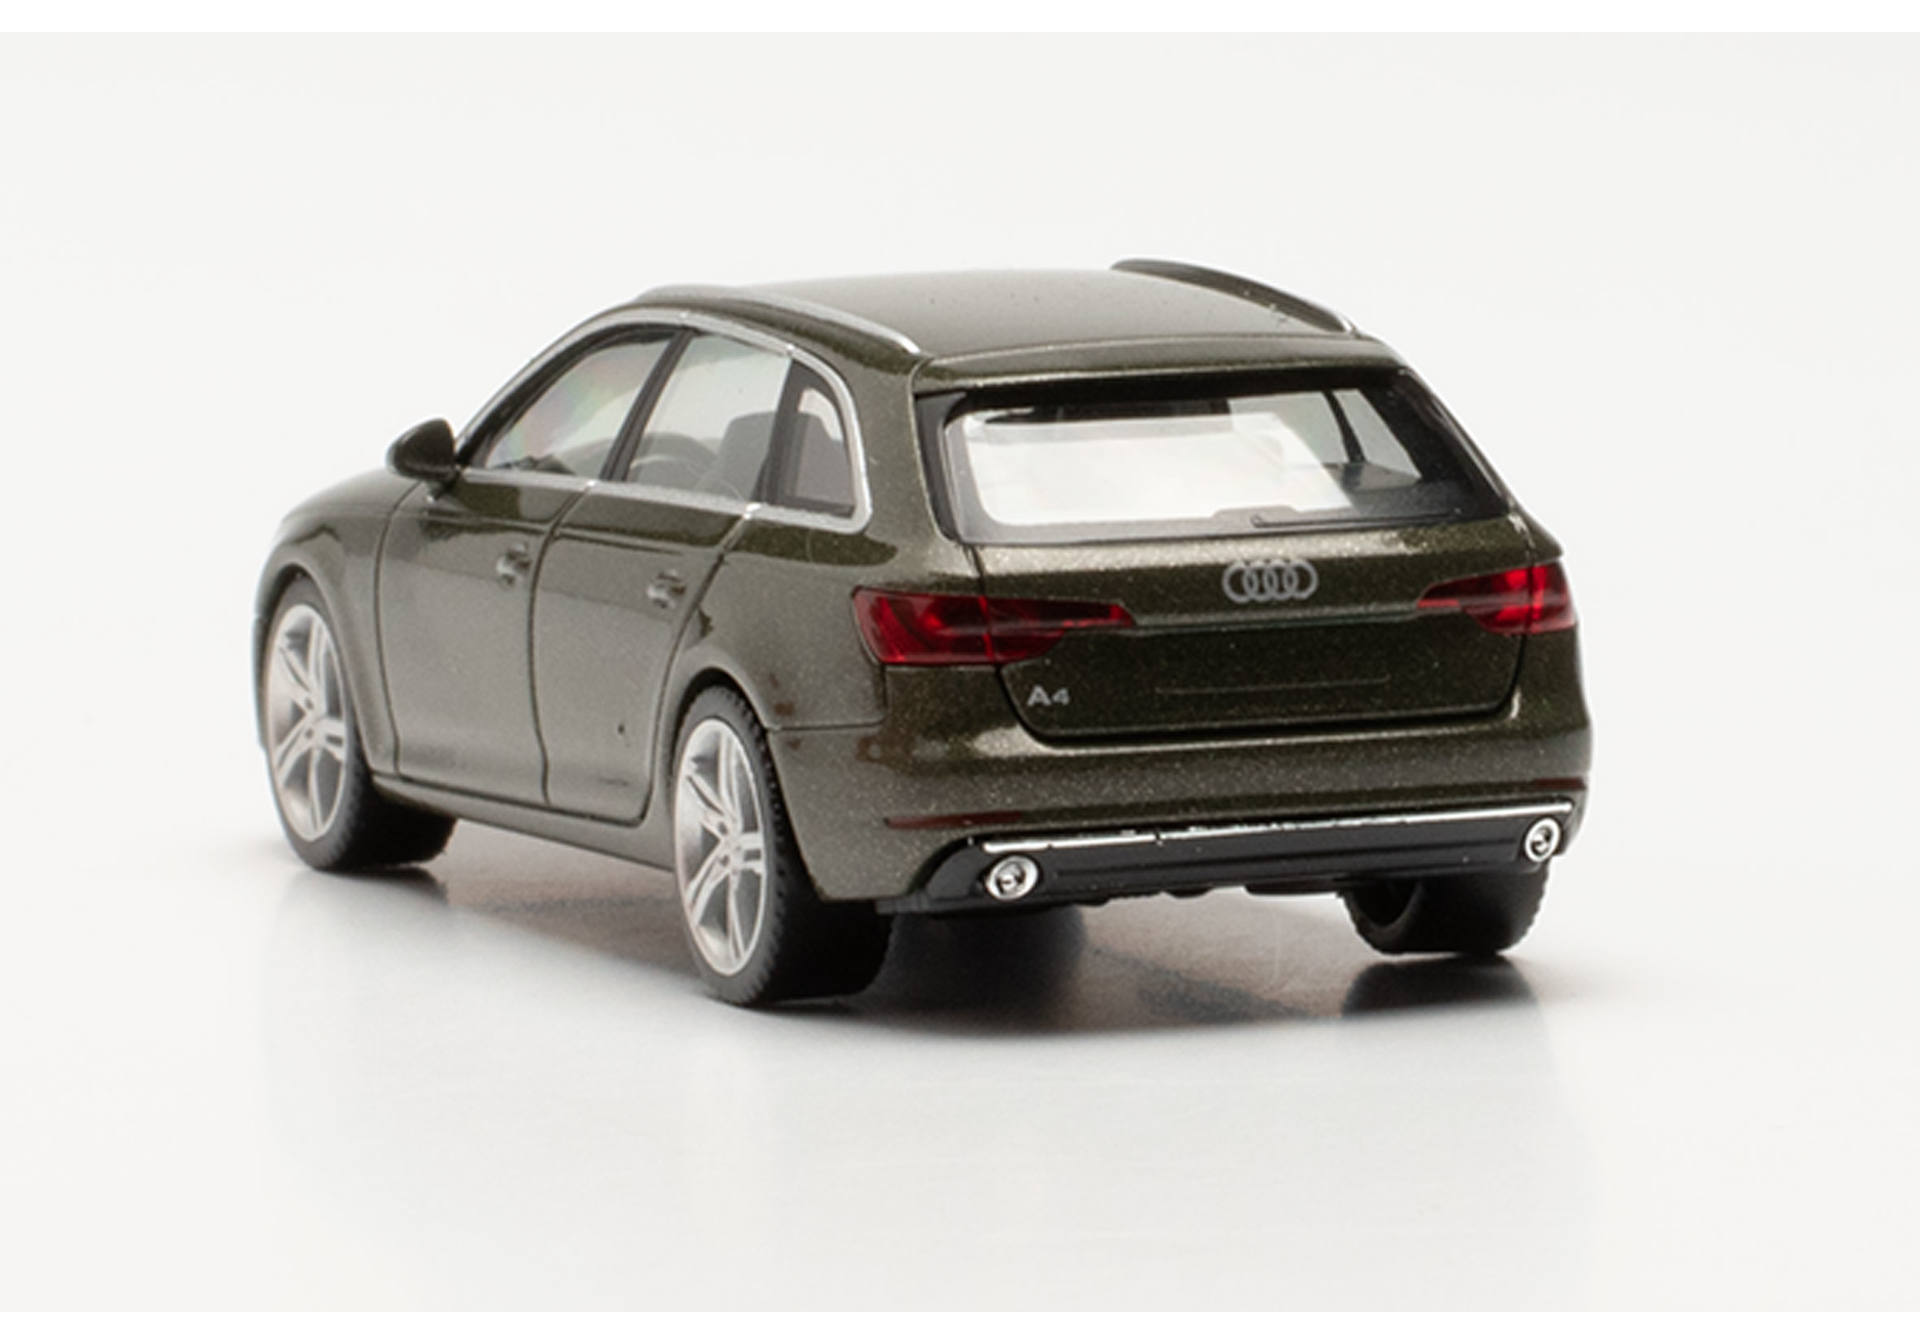 Audi A4 Avant, distriktgrün metallic